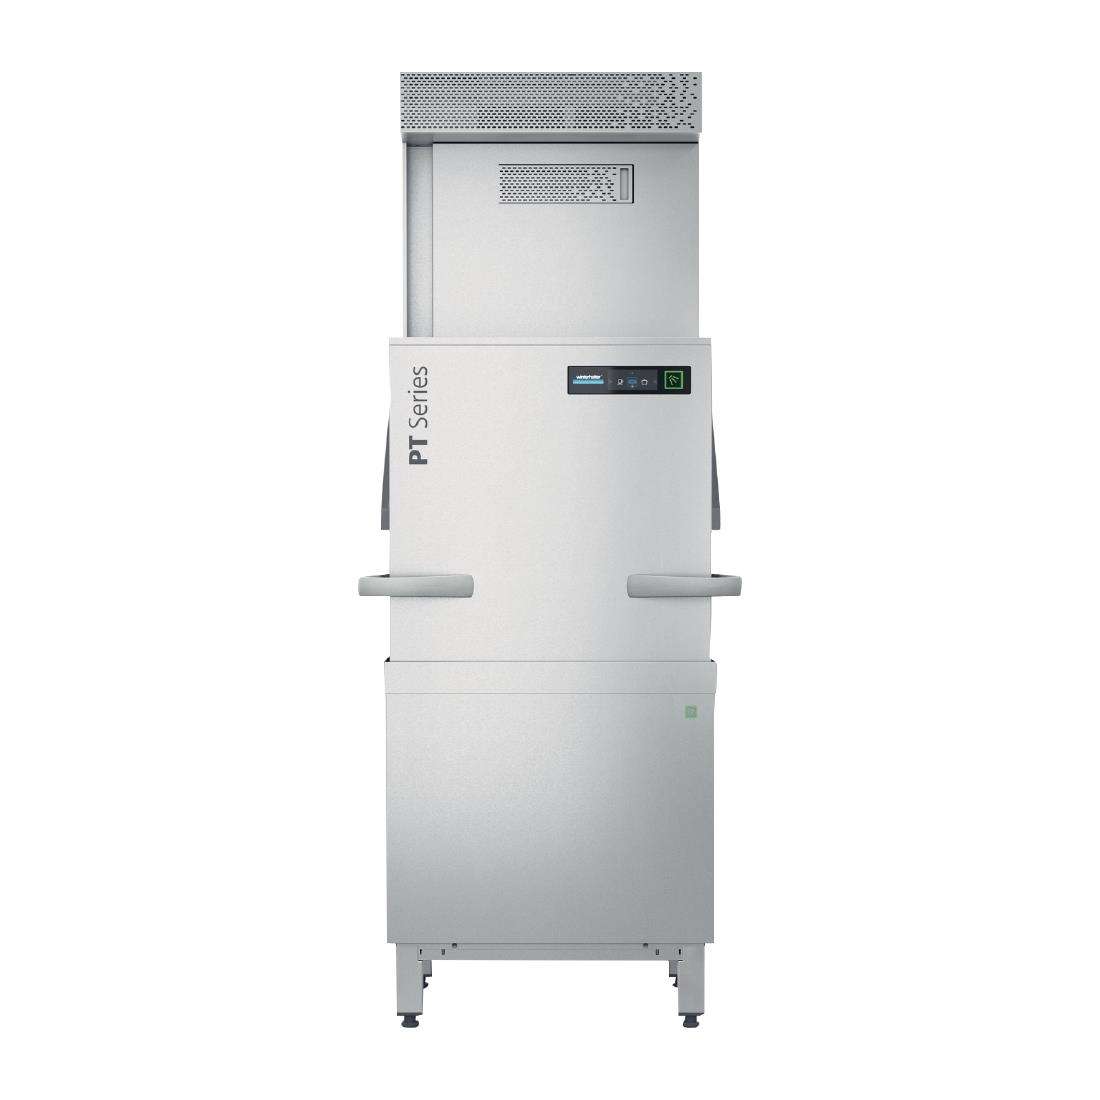 Winterhalter PT-L EnergyPlus Pass Through Dishwasher